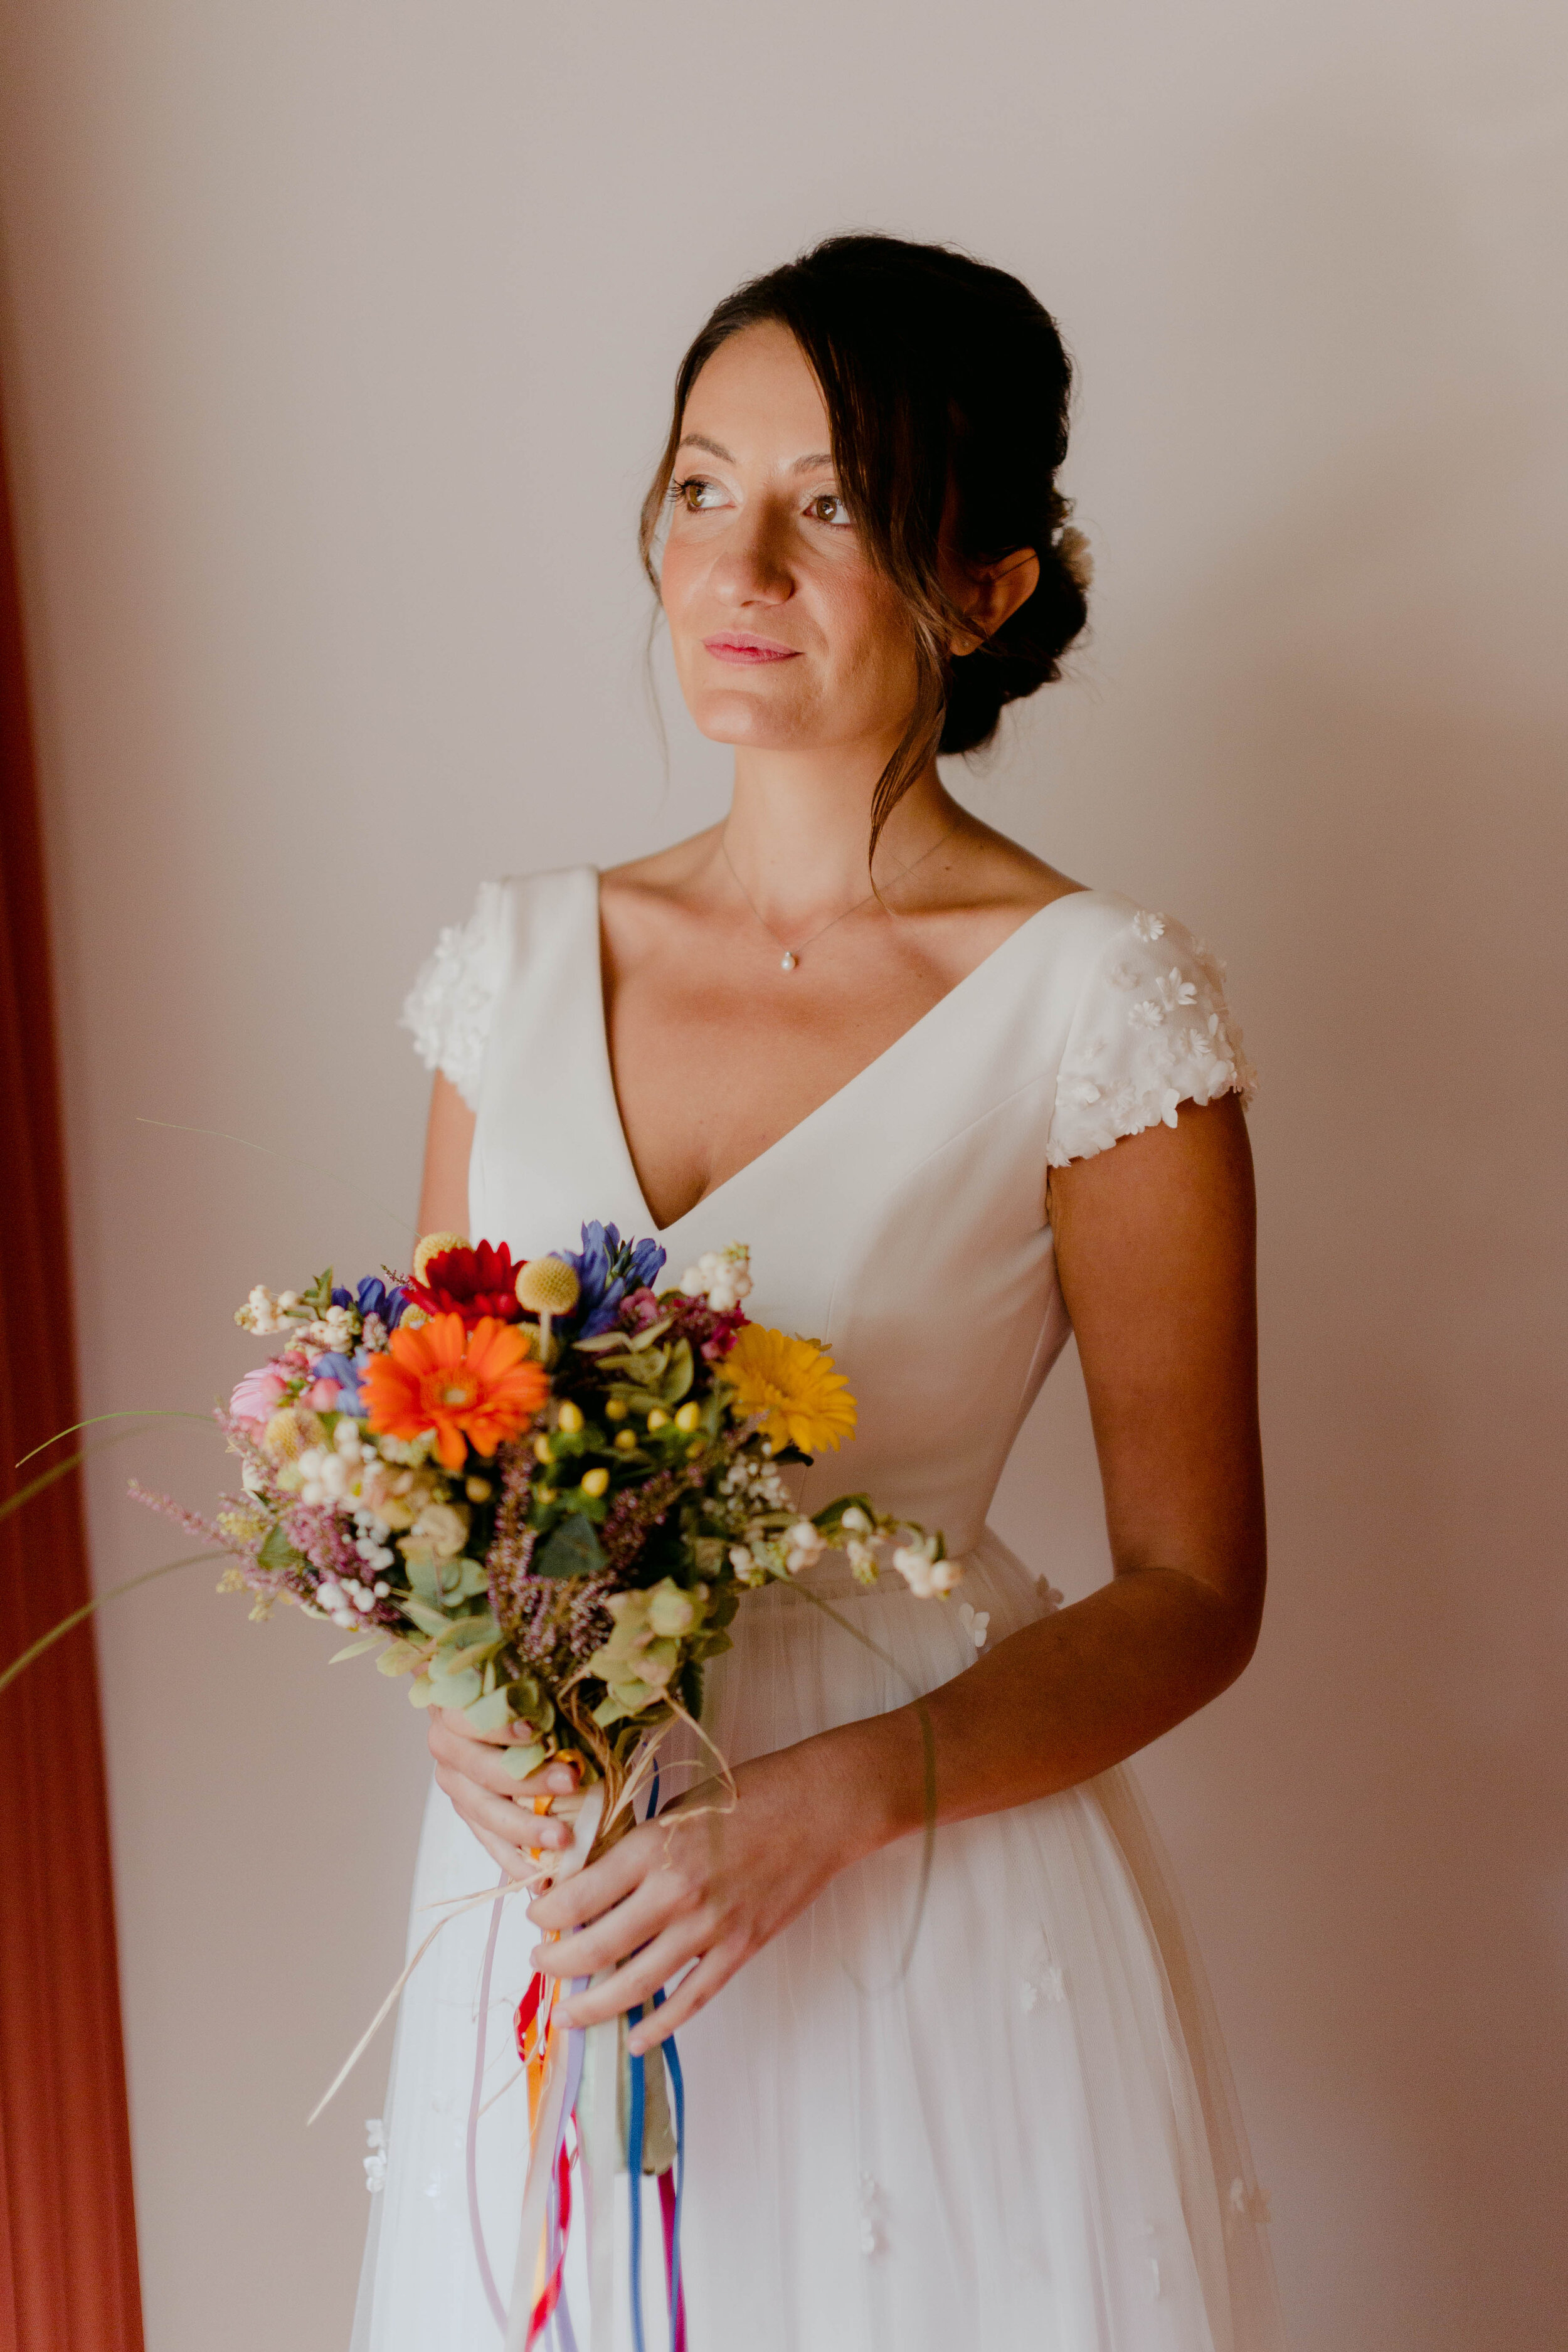 024 - Matrimonio in Val di Susa - Miriam Callegari Fotografa.JPG